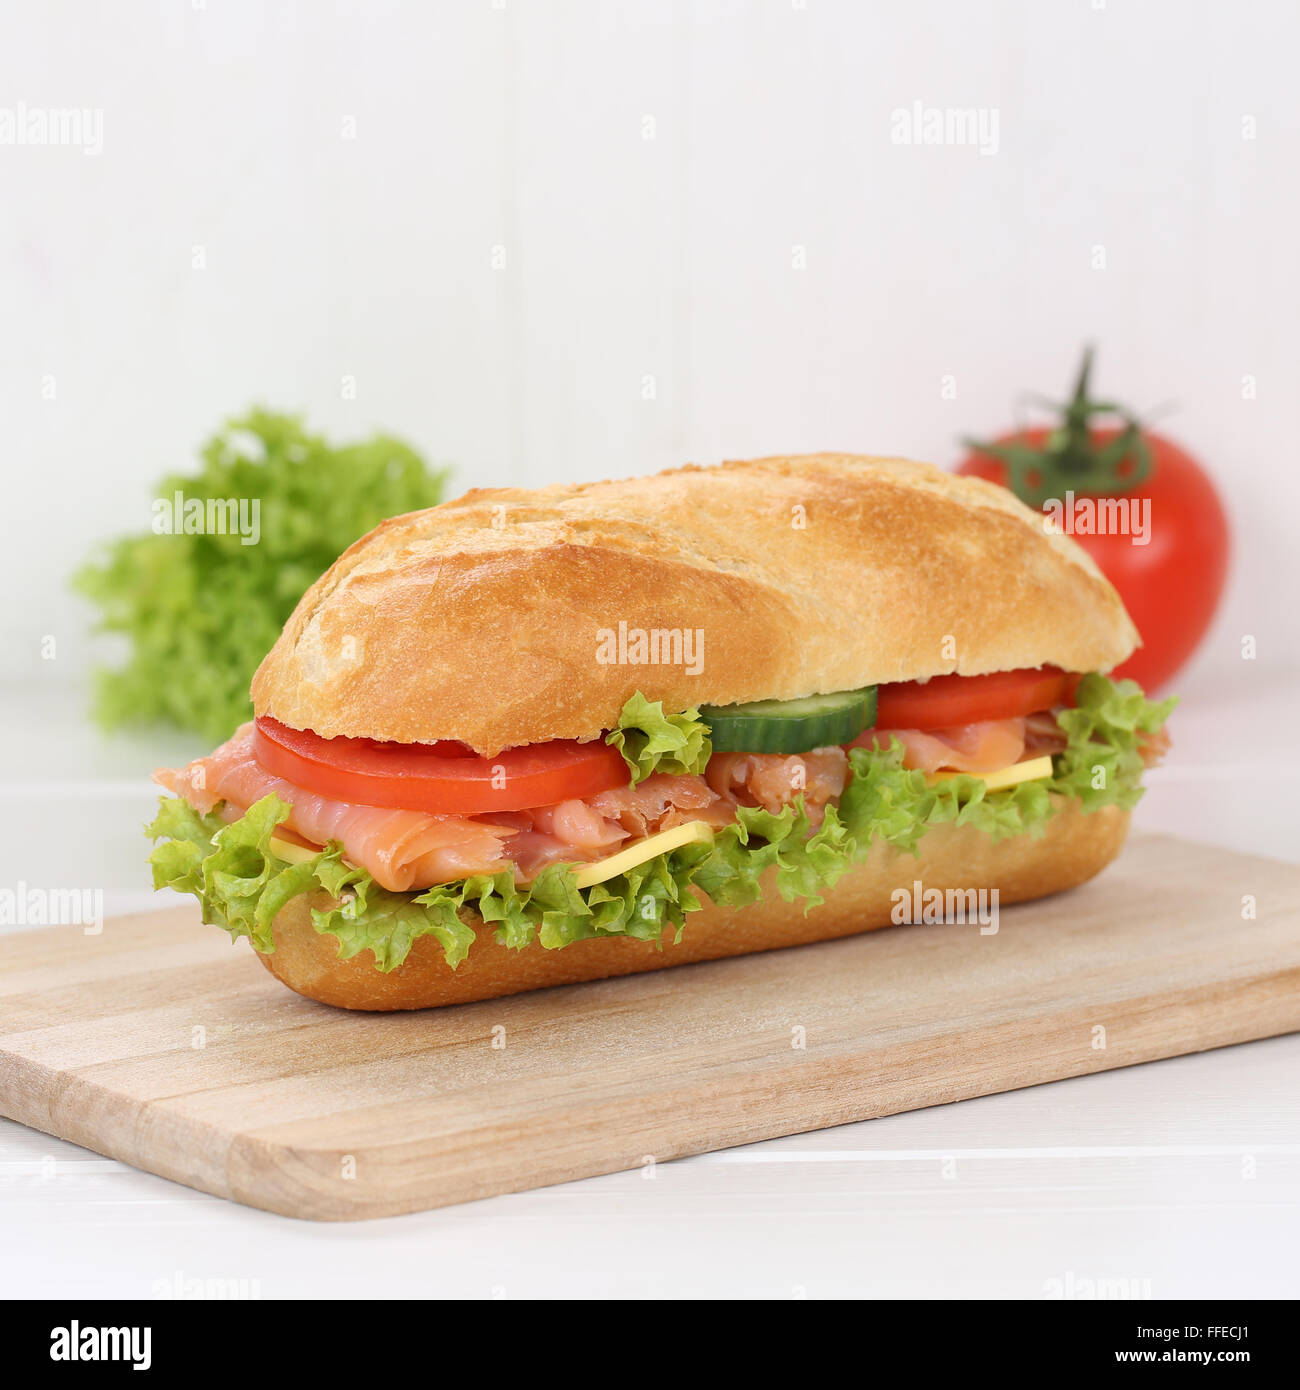 Mangiare sano sub deli sandwich baguette con salmone pesce, formaggio, pomodori e lattuga per la prima colazione Foto Stock